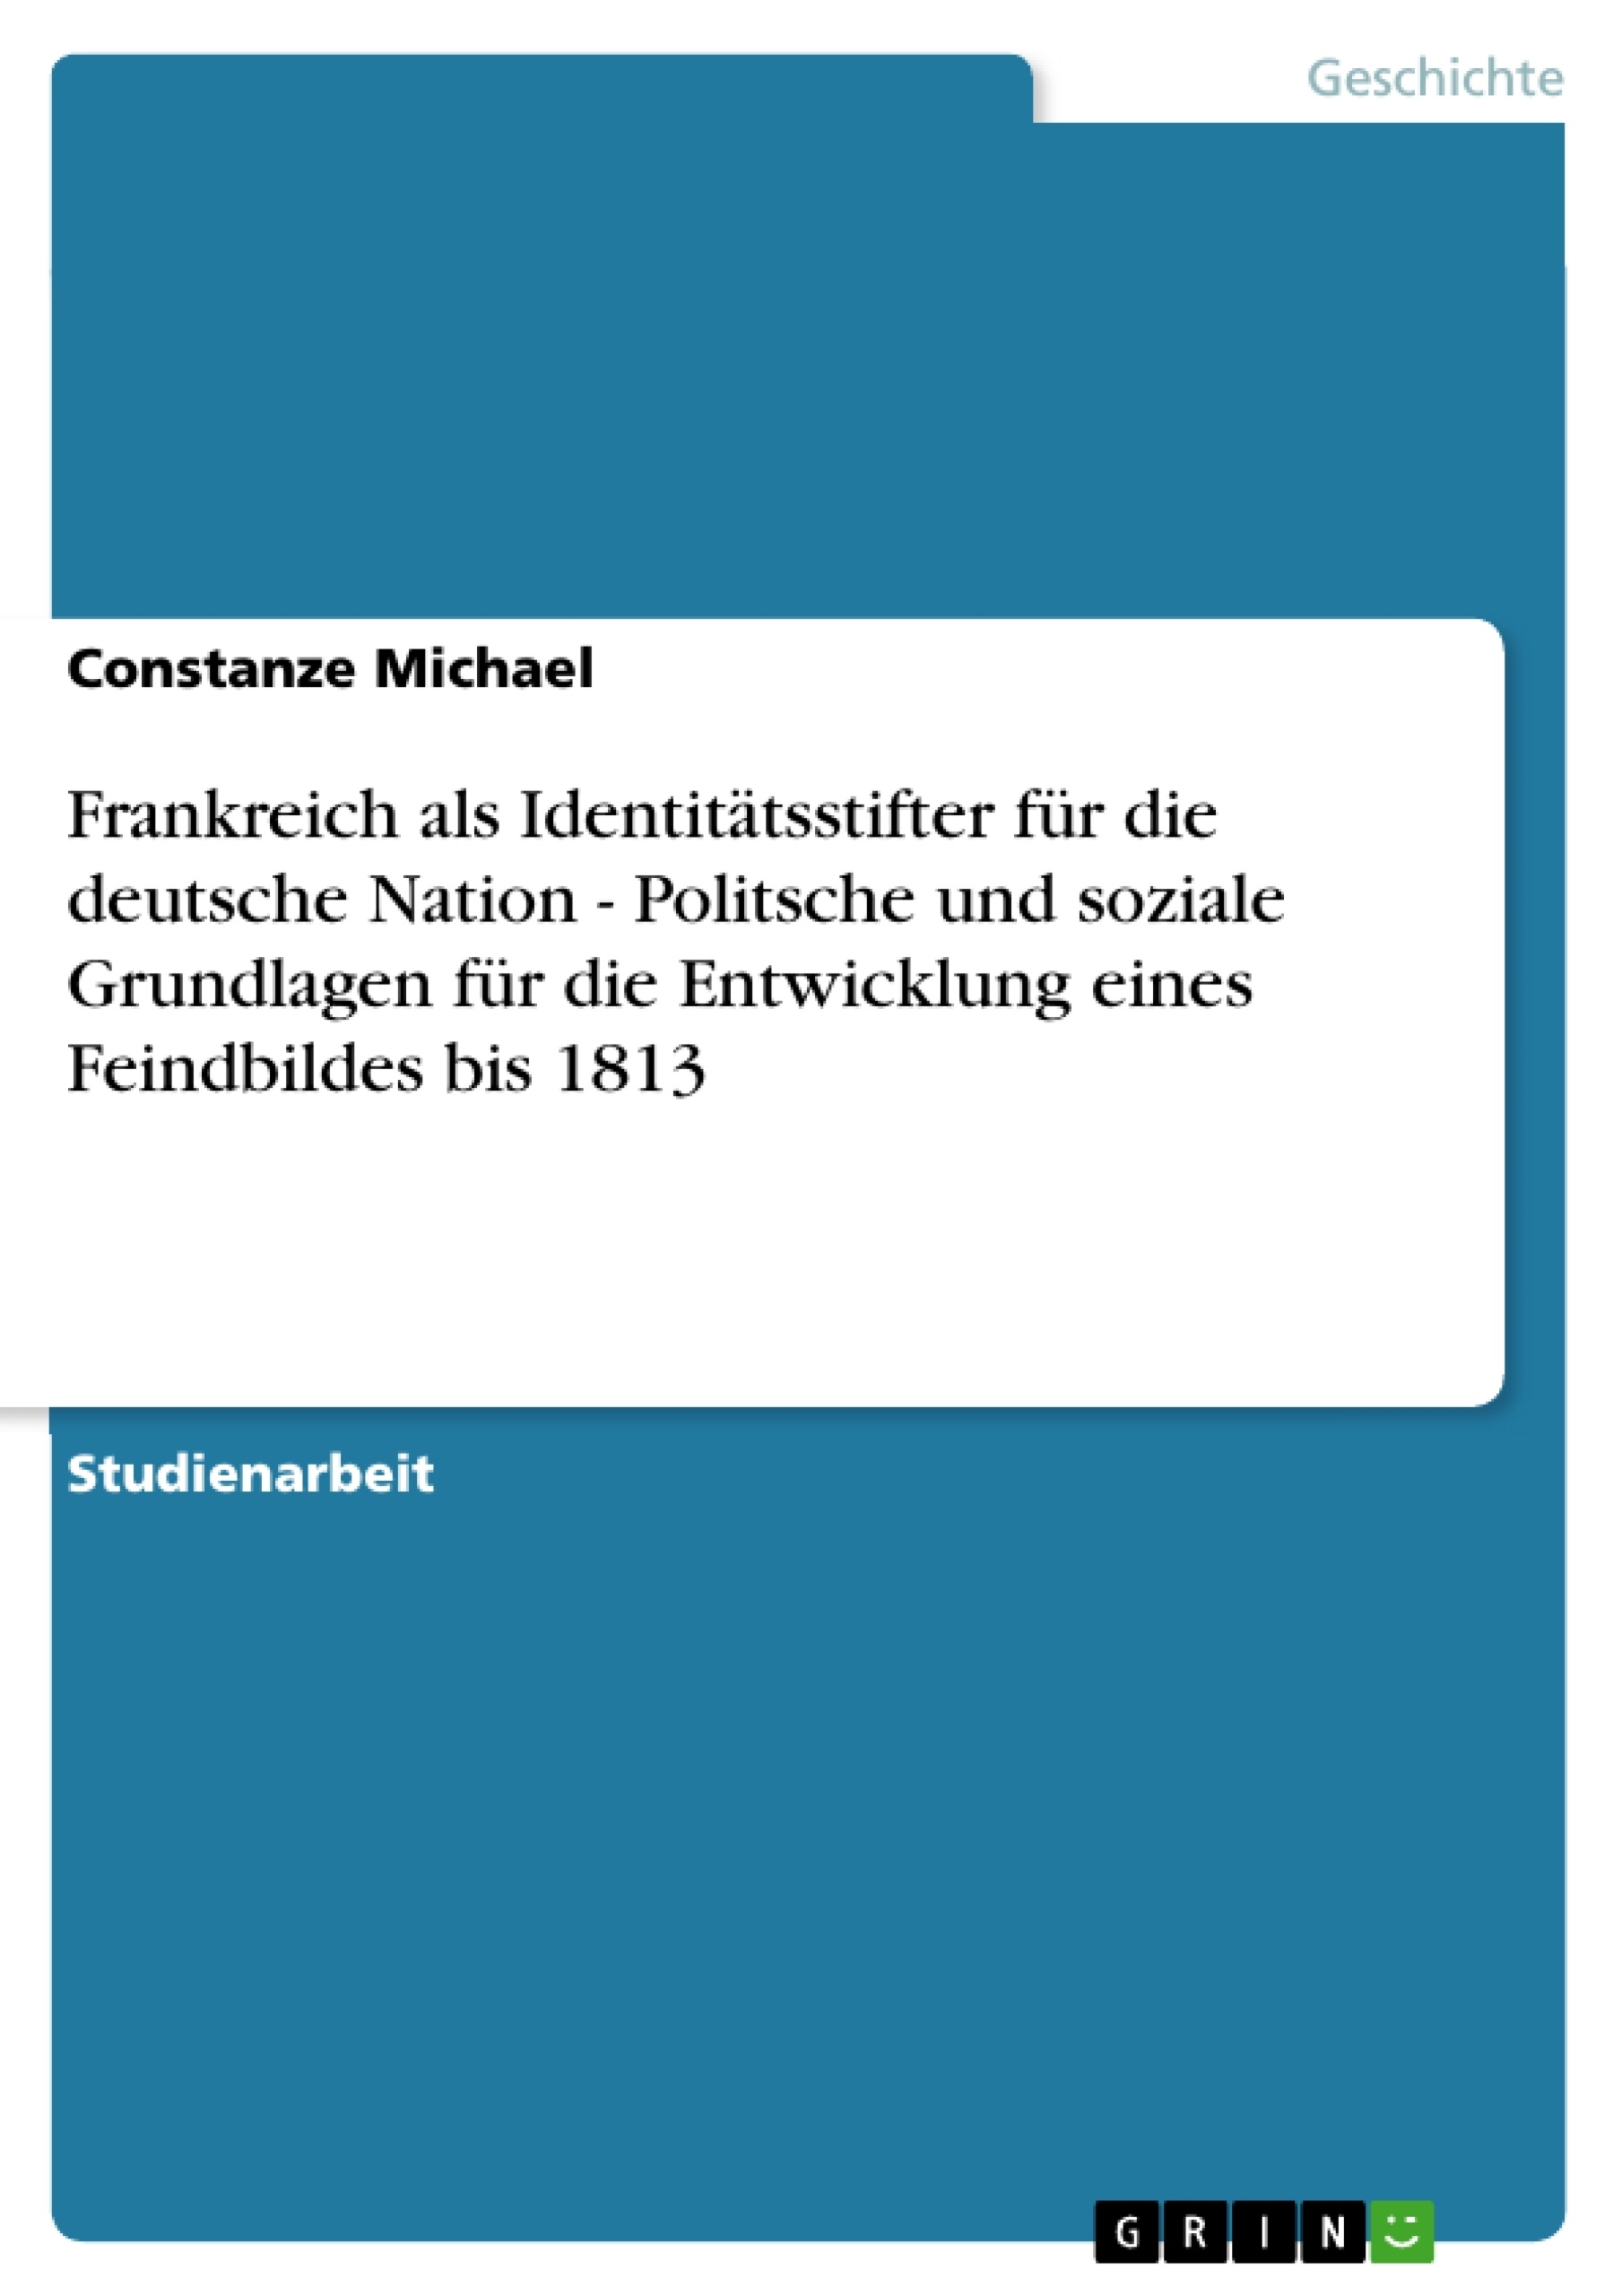 Titel: Frankreich als Identitätsstifter für die deutsche Nation - Politsche und soziale Grundlagen für die Entwicklung eines Feindbildes bis 1813